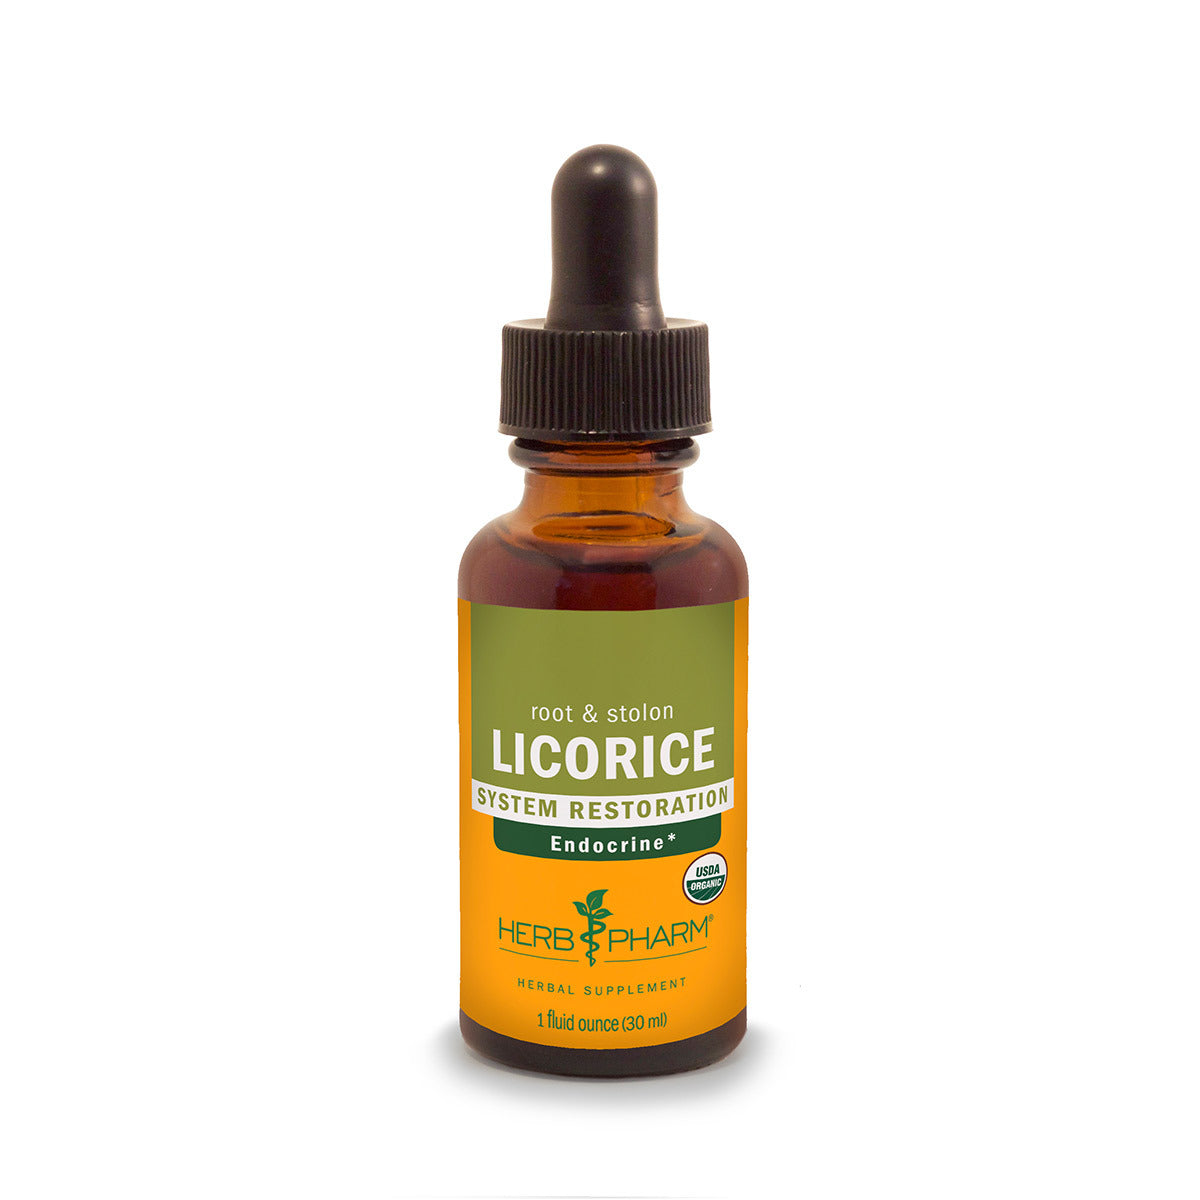 Primary image of Licorice Extract